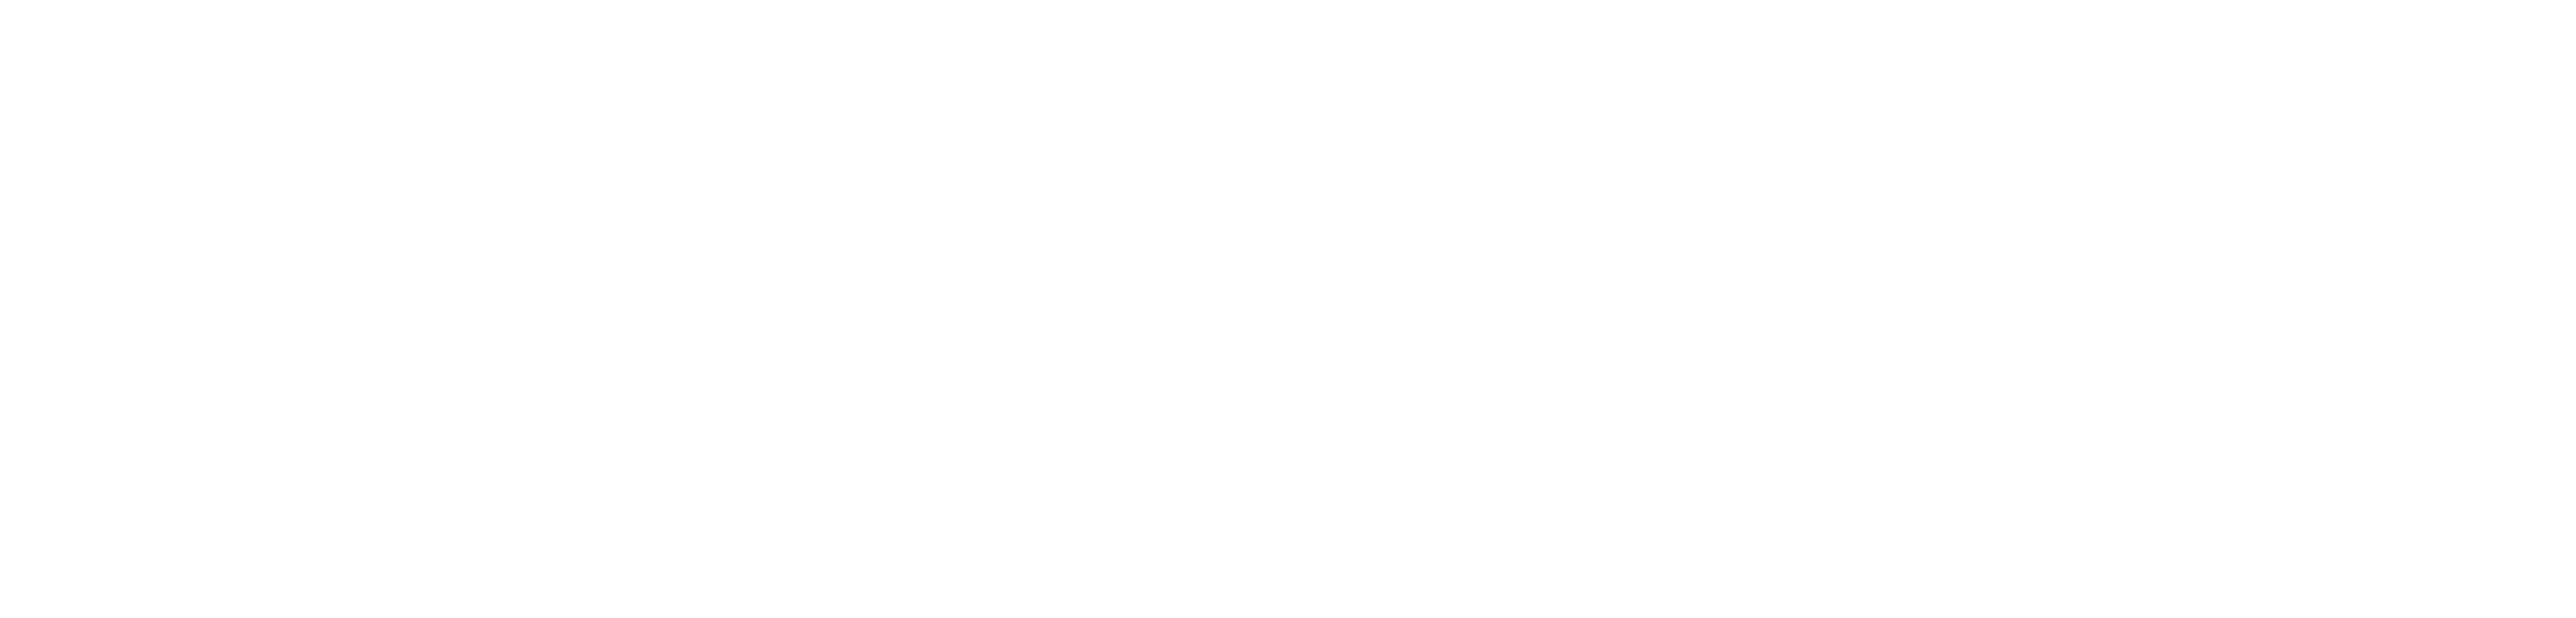 Die Messebauer Hannover